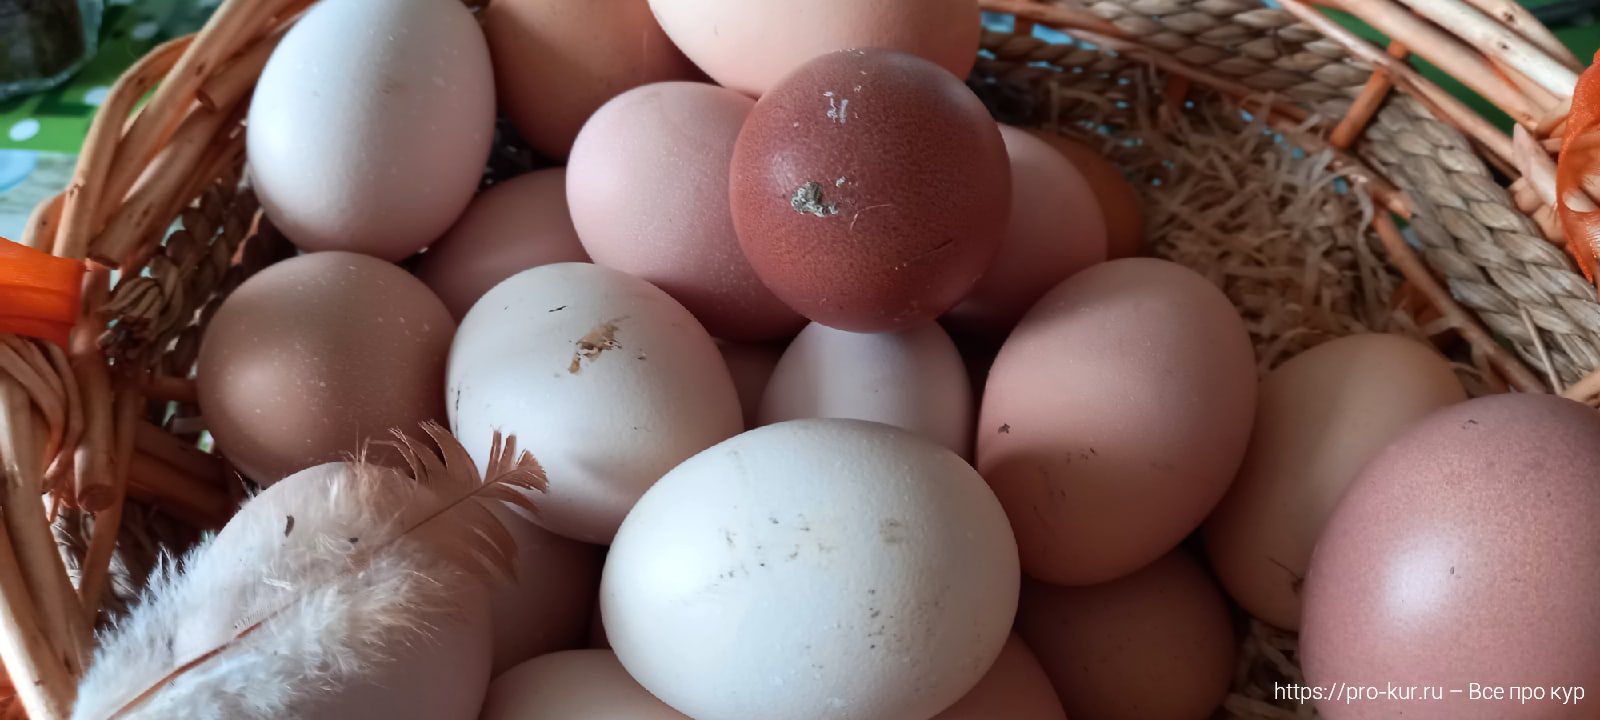 Нужно ли мыть куриные яйца перед закладкой их в инкубатор? 